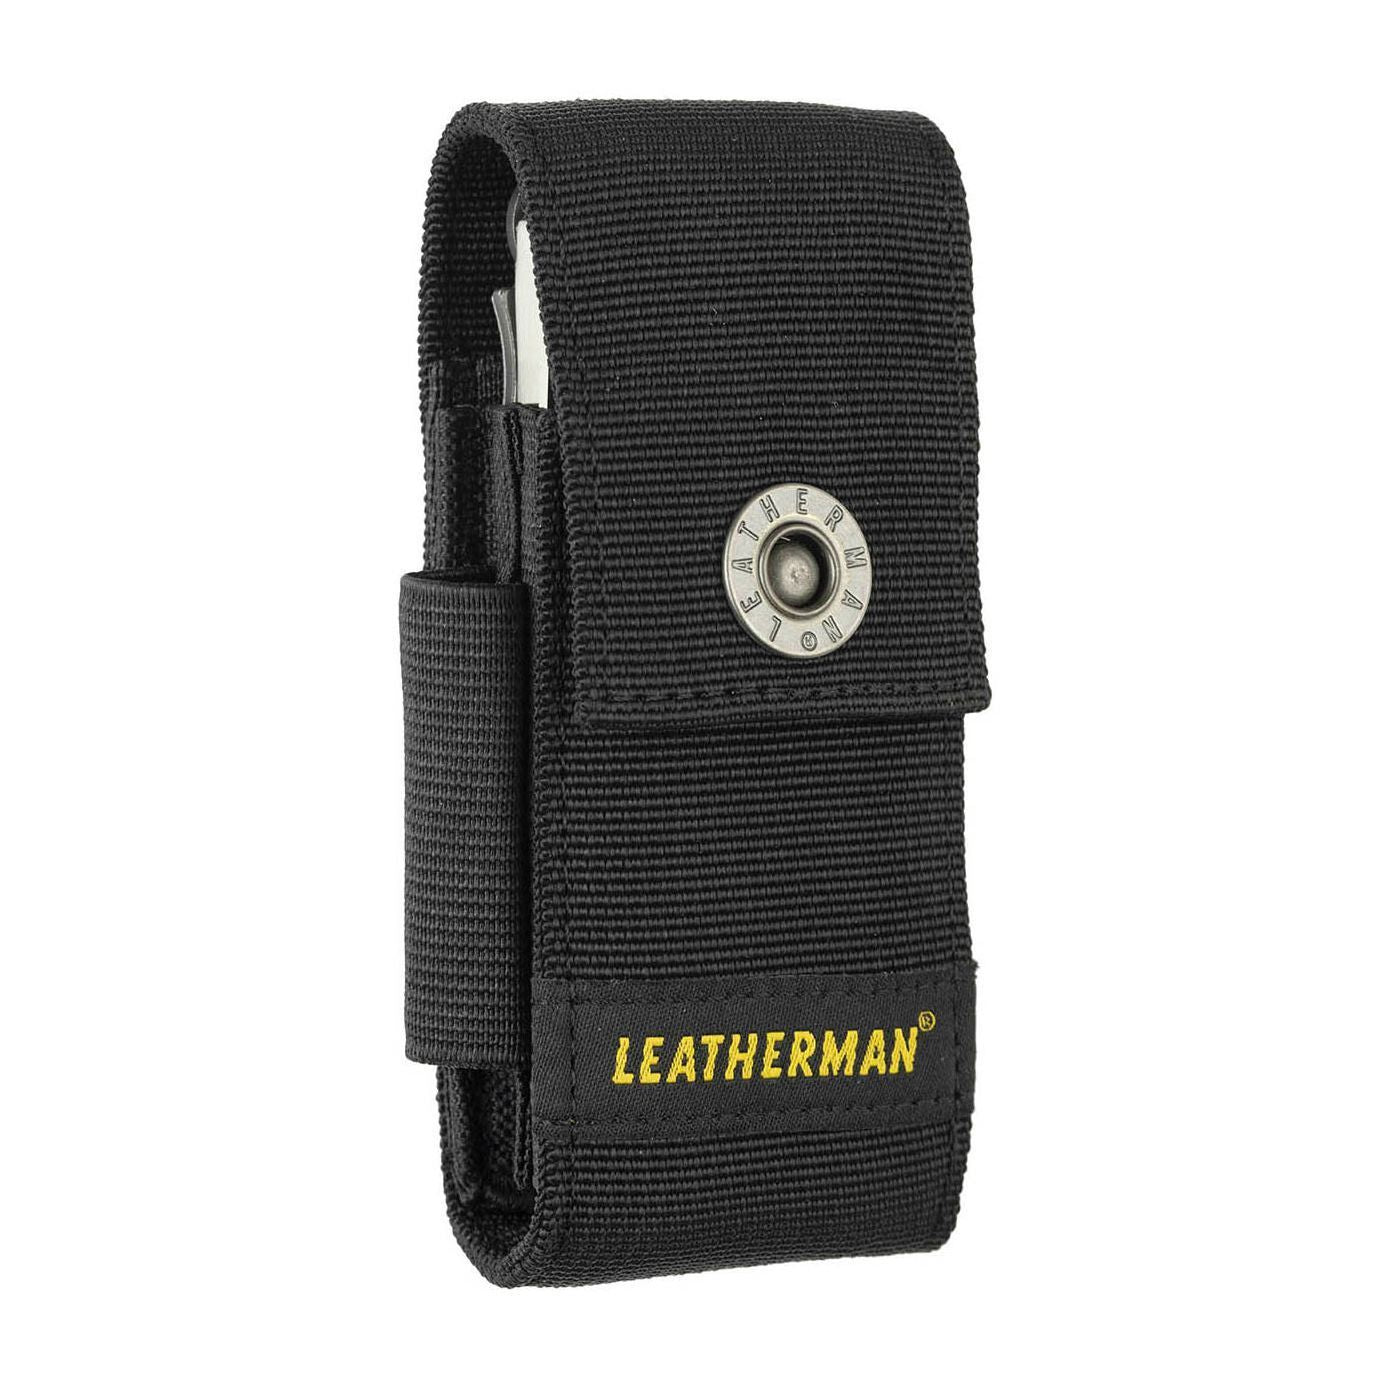 Leatherman Charge Plus Multi-Tool